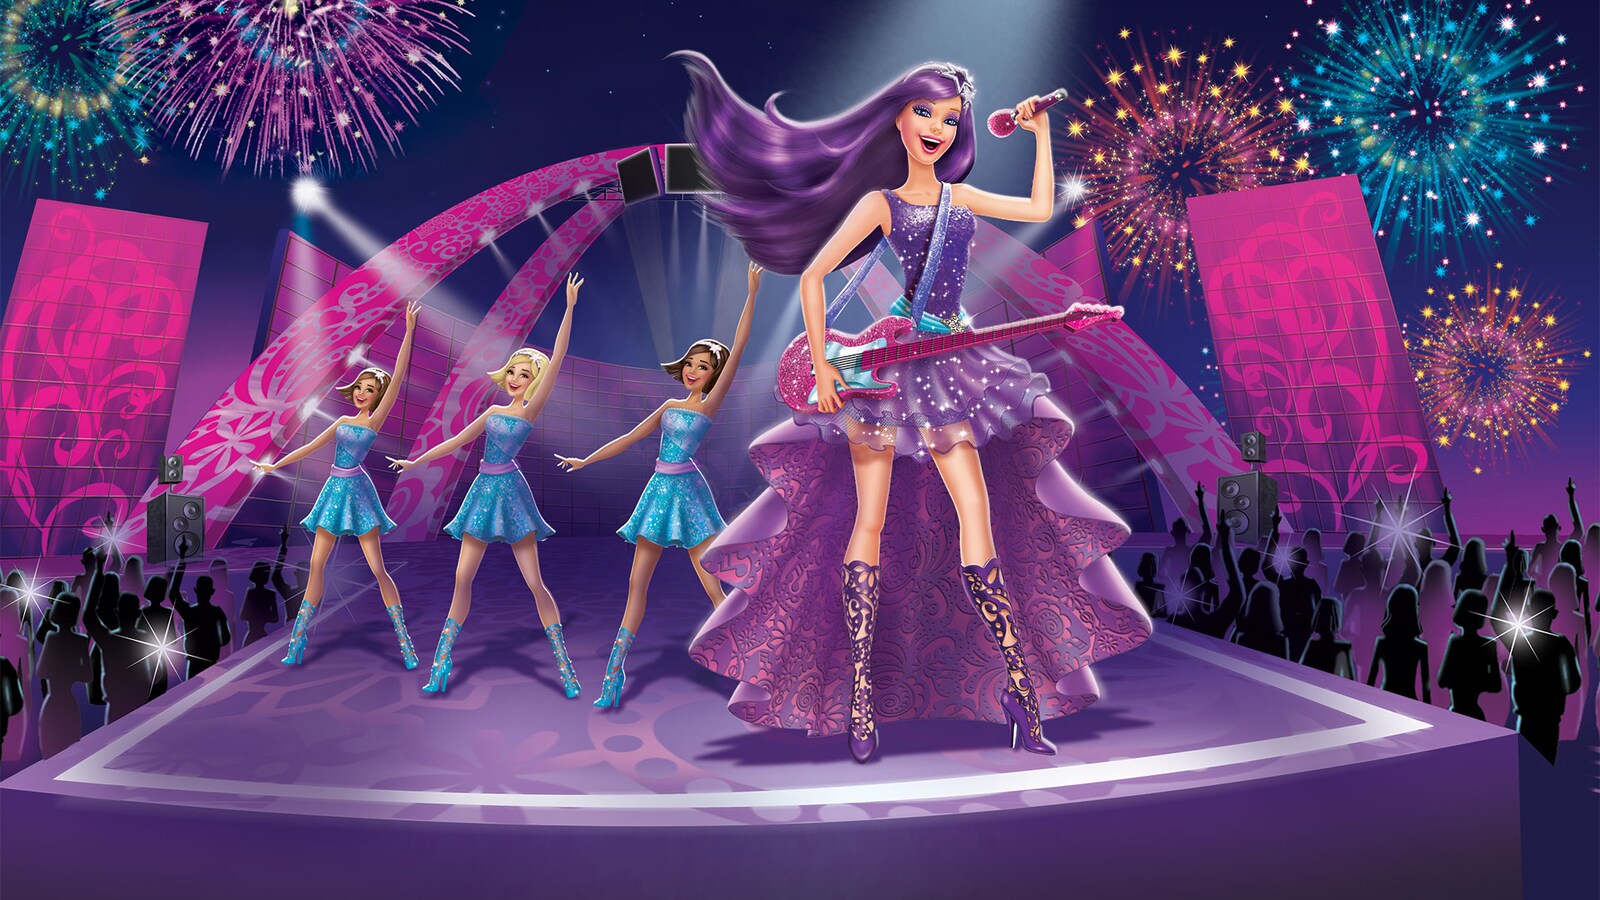 barbie-prinsessen-og-popstjernen-2012